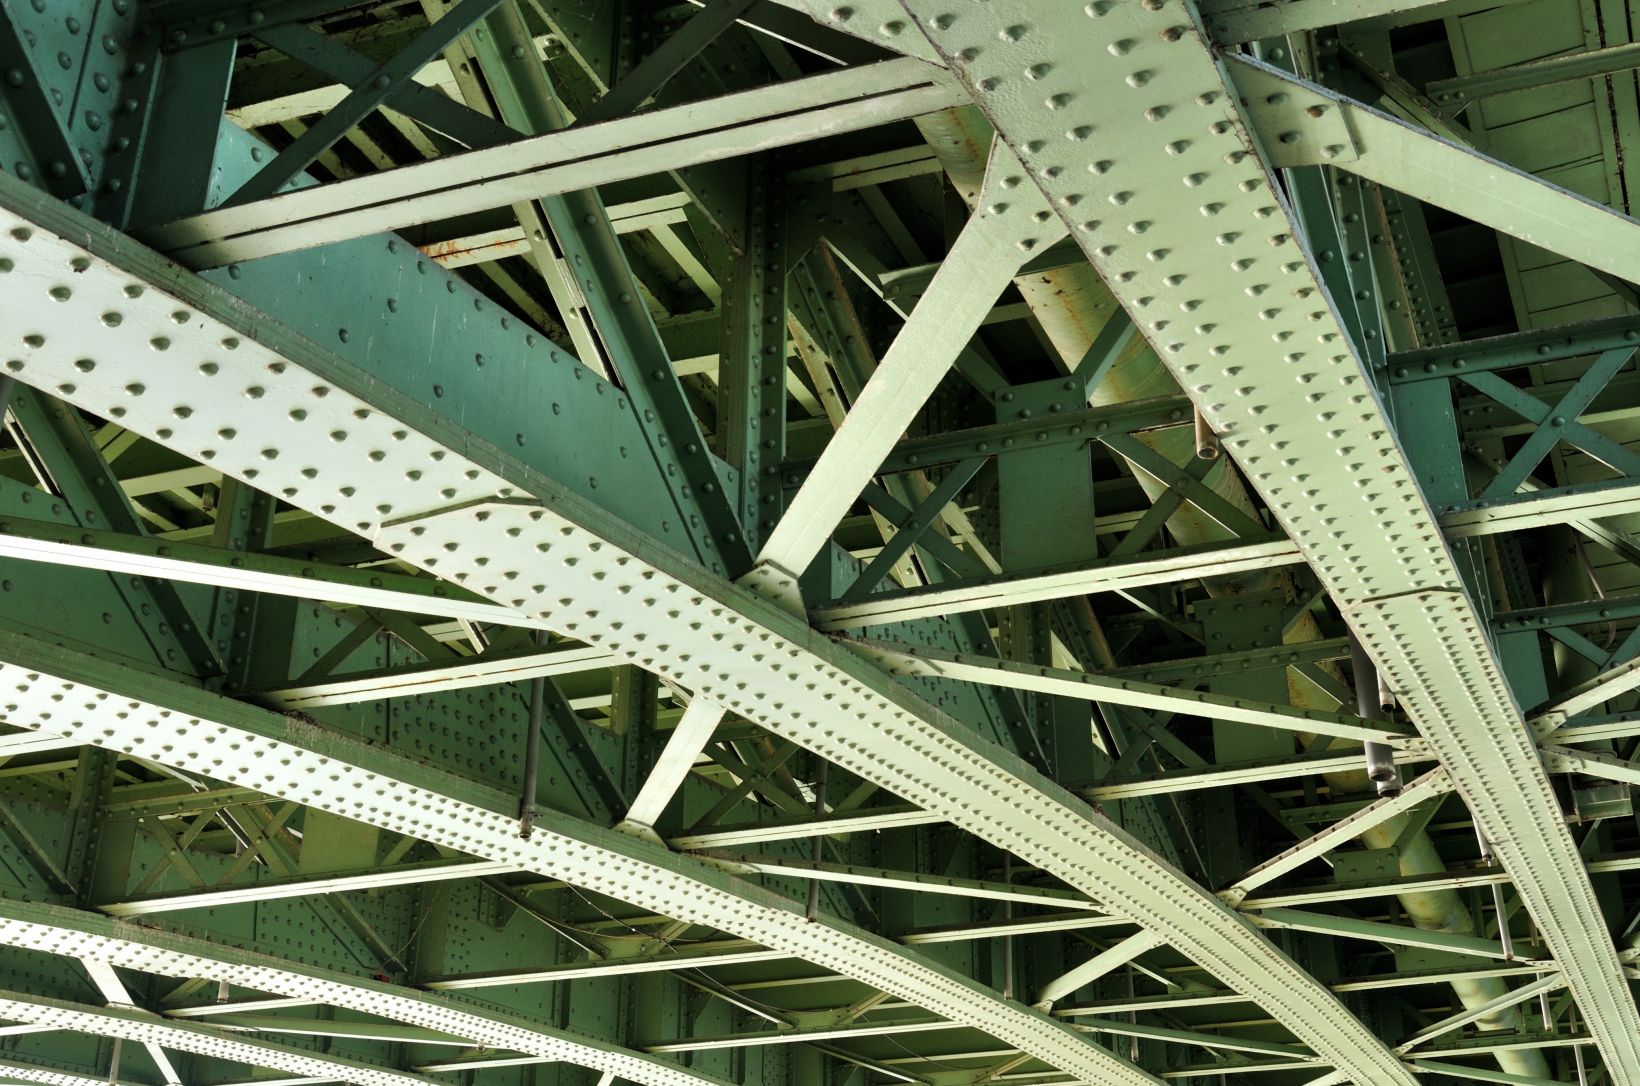 Крупным планом: мостовые стальные балки — элементы конструкции, подвергающиеся воздействию циклического нагружения.